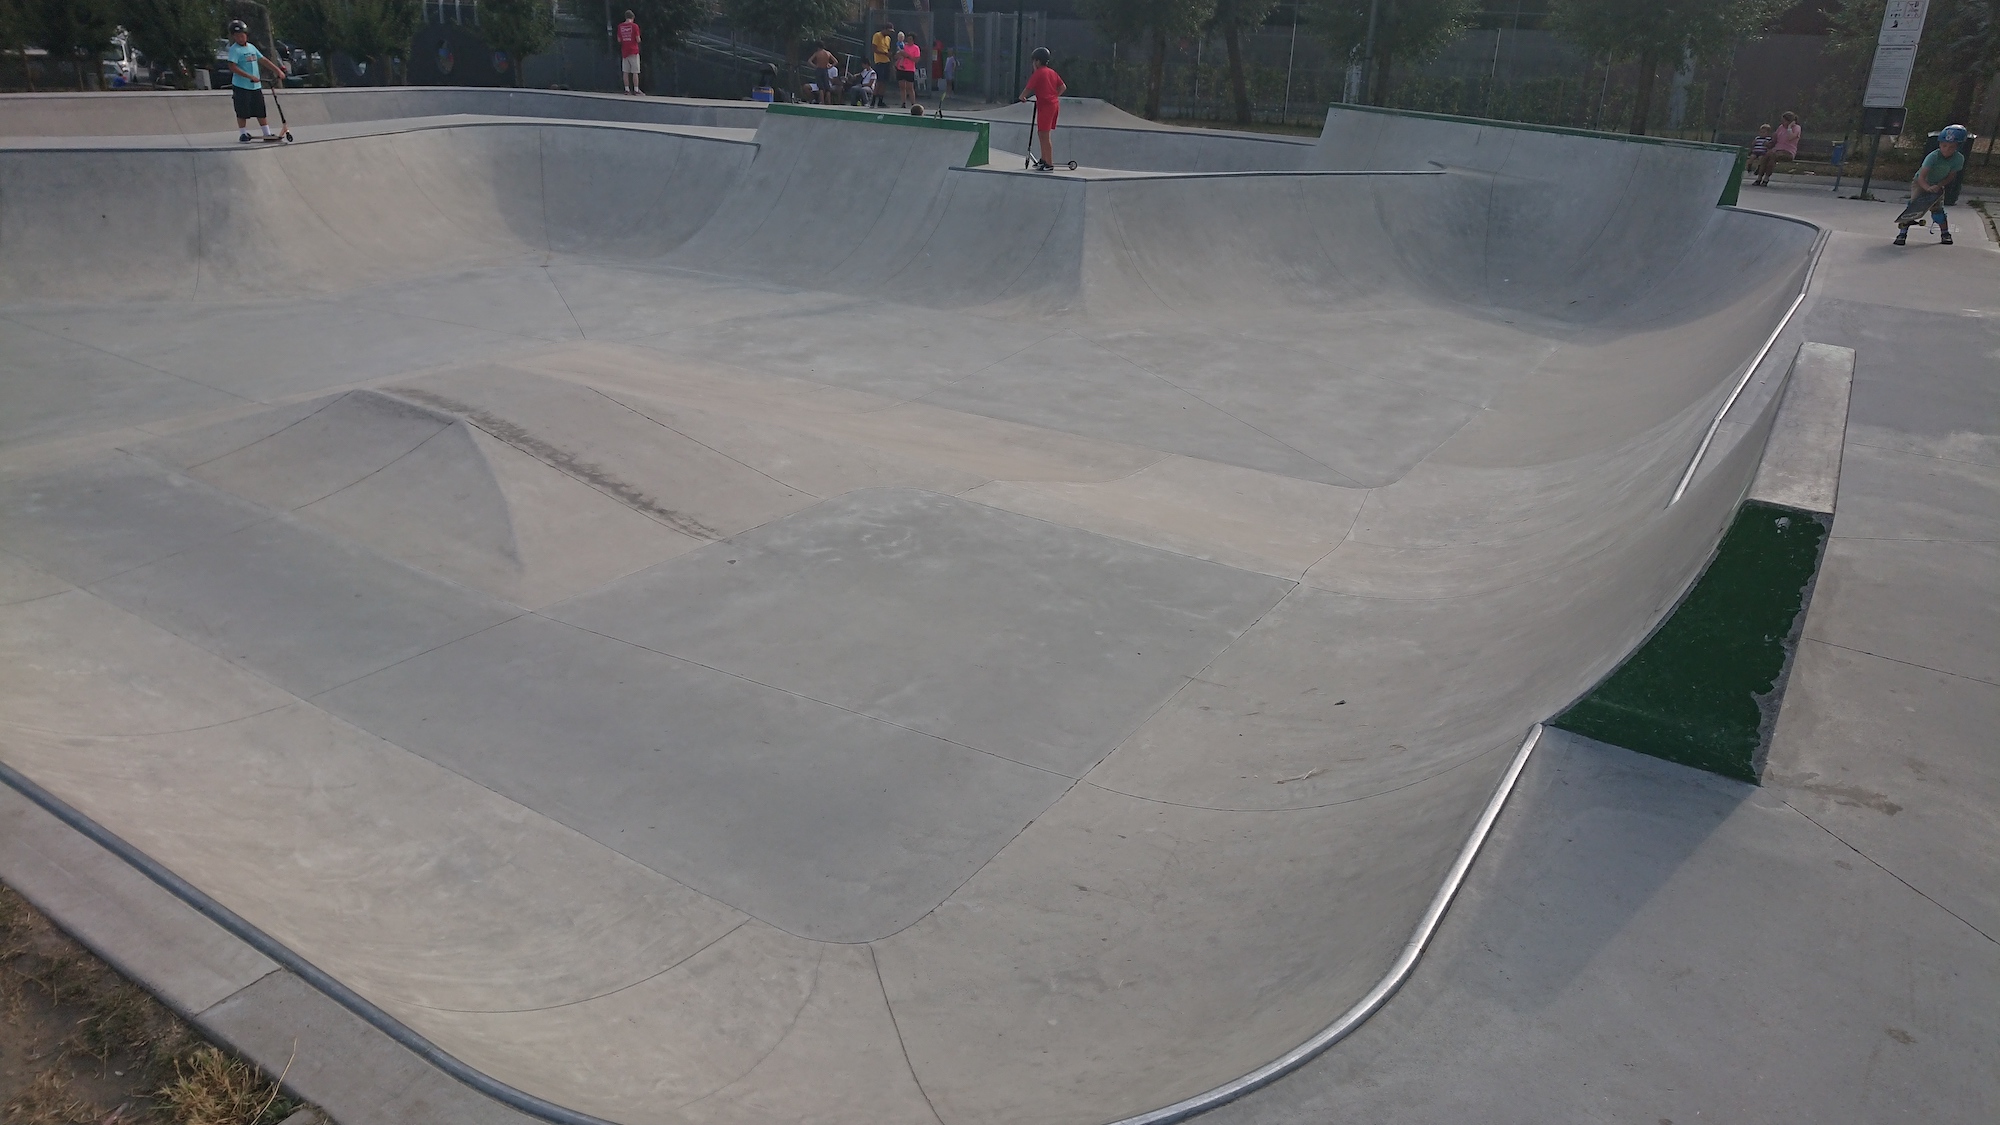 Strombeek Bever skatepark